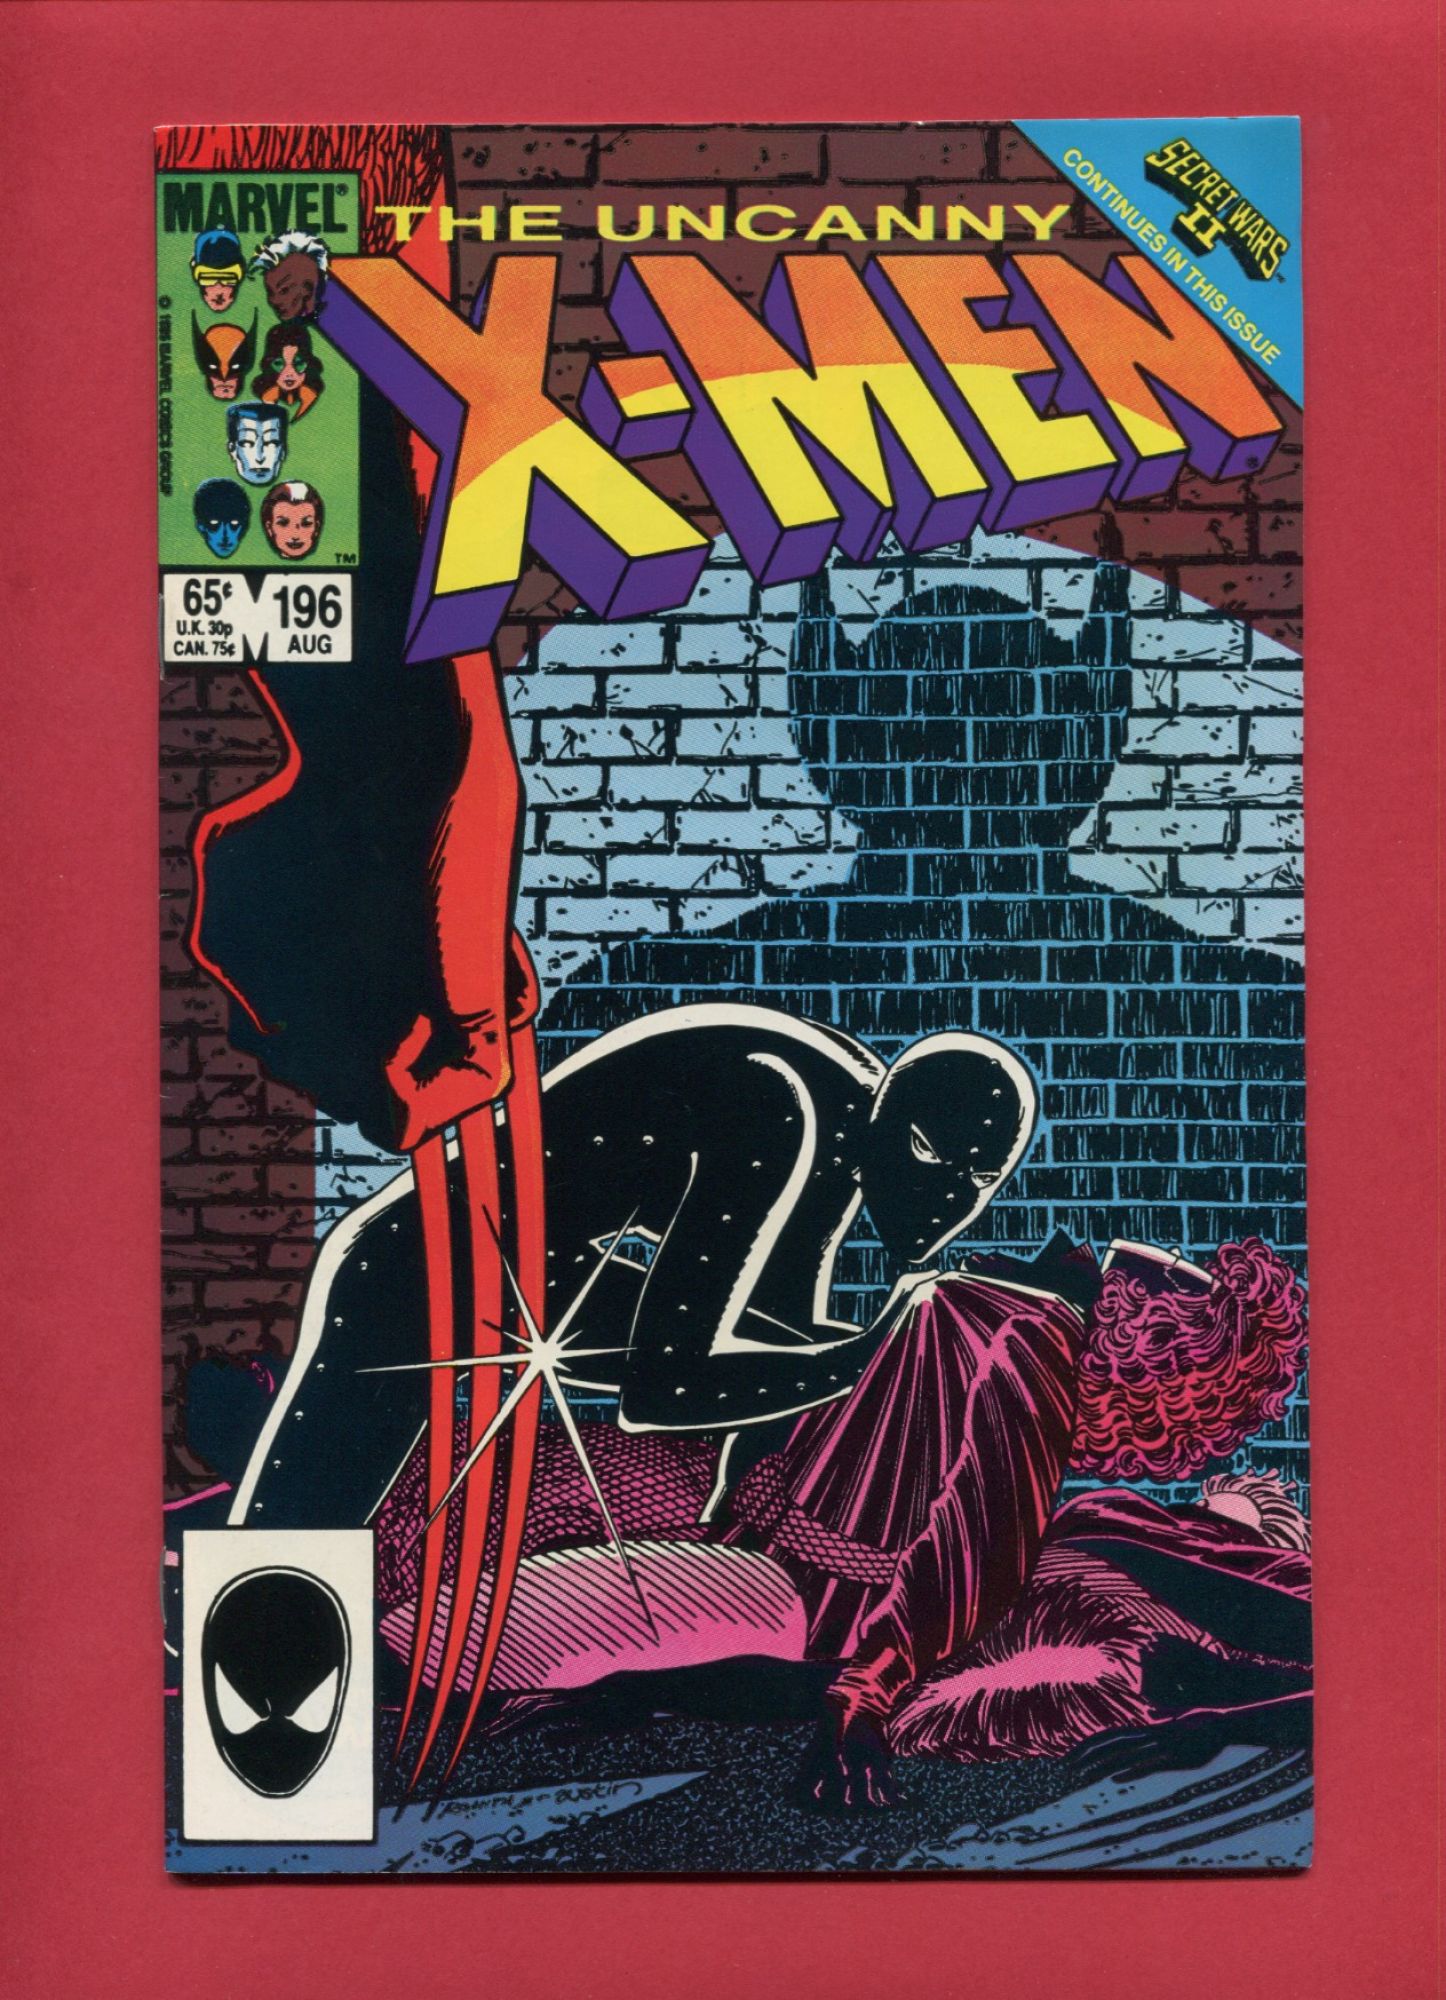 Uncanny X-Men #196, Aug 1985, 9.2 NM-